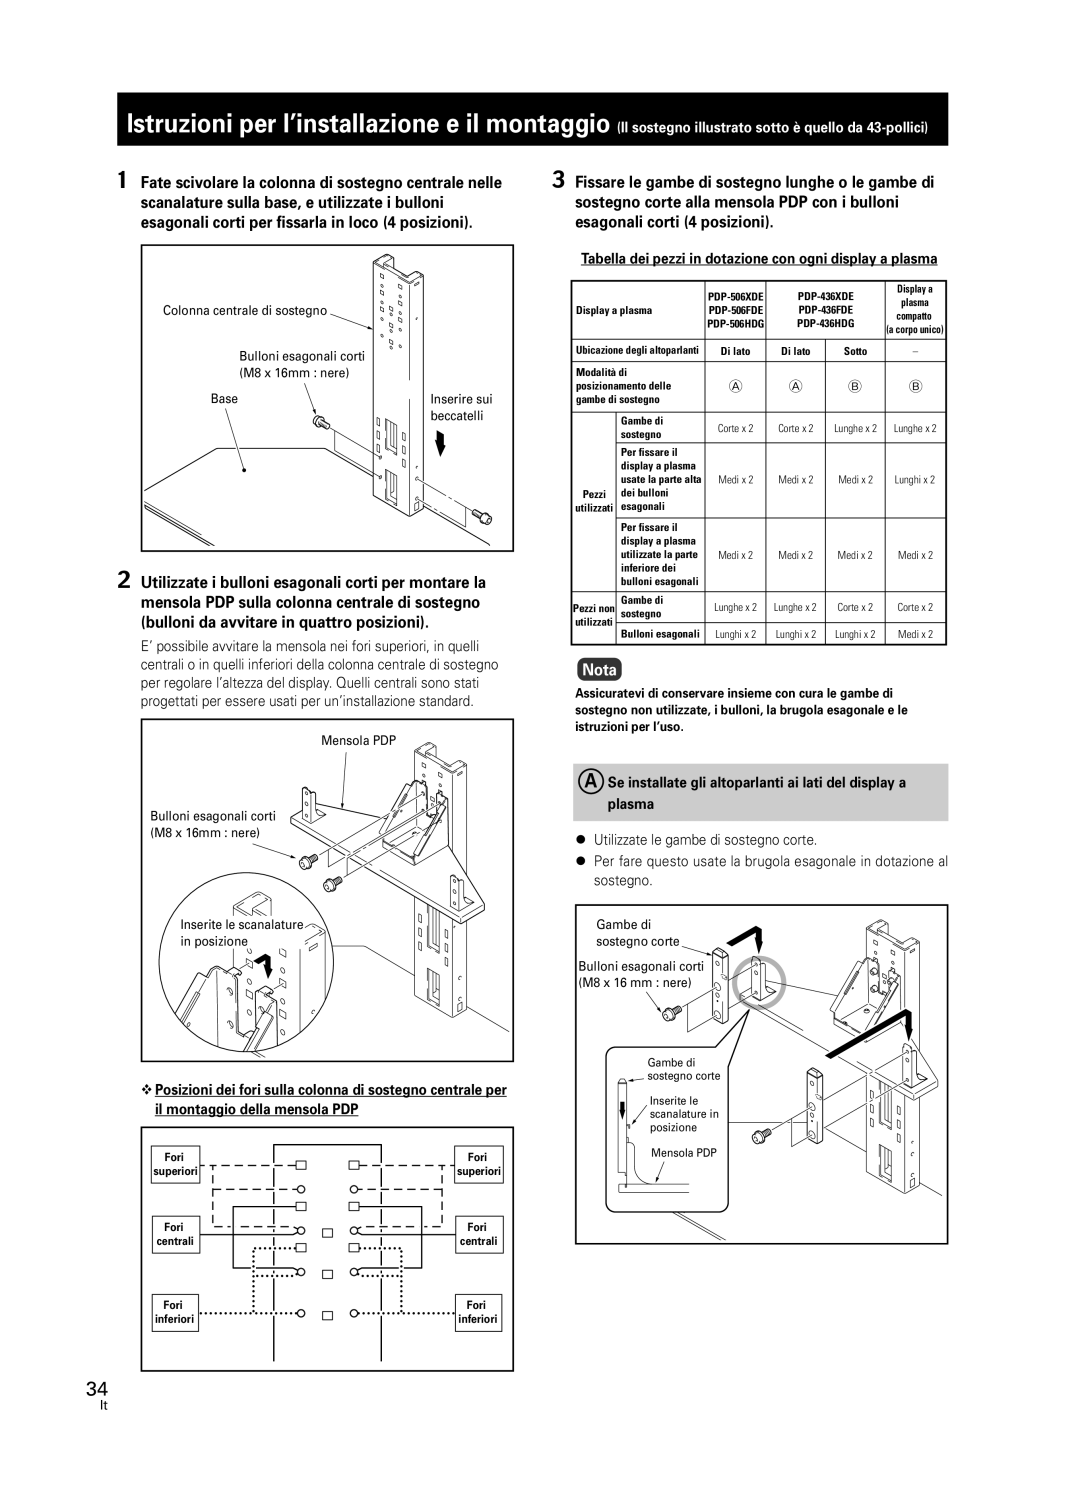 Pioneer PDK-FS05 manual Nota, Utilizzate le gambe di sostegno corte 